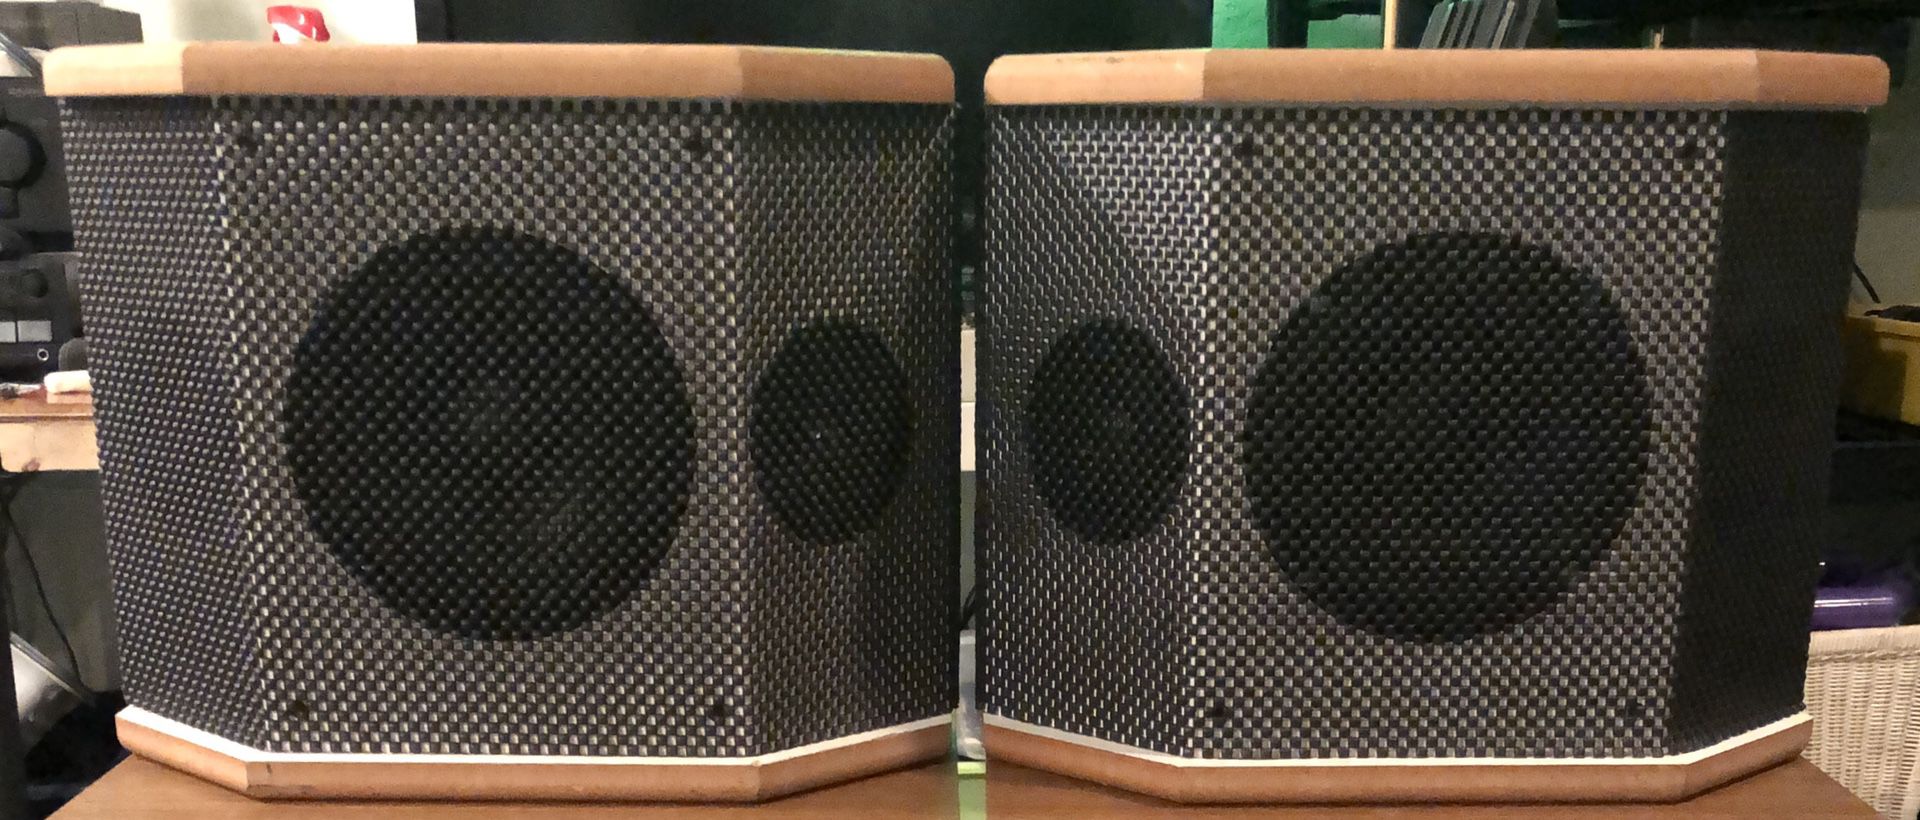 Eosone RSR-350 Speakers Like Bose!!